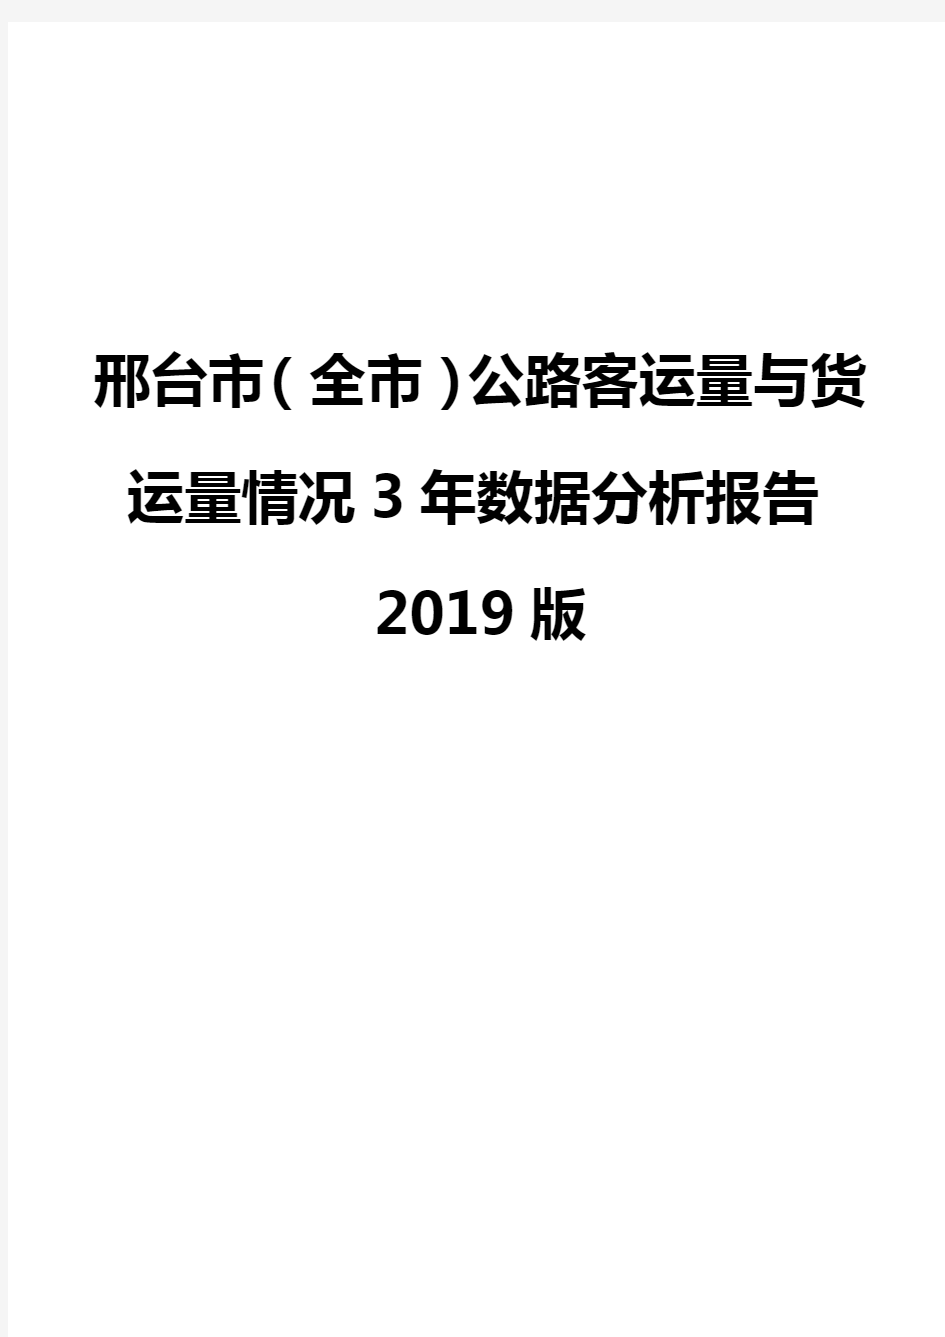 邢台市(全市)公路客运量与货运量情况3年数据分析报告2019版